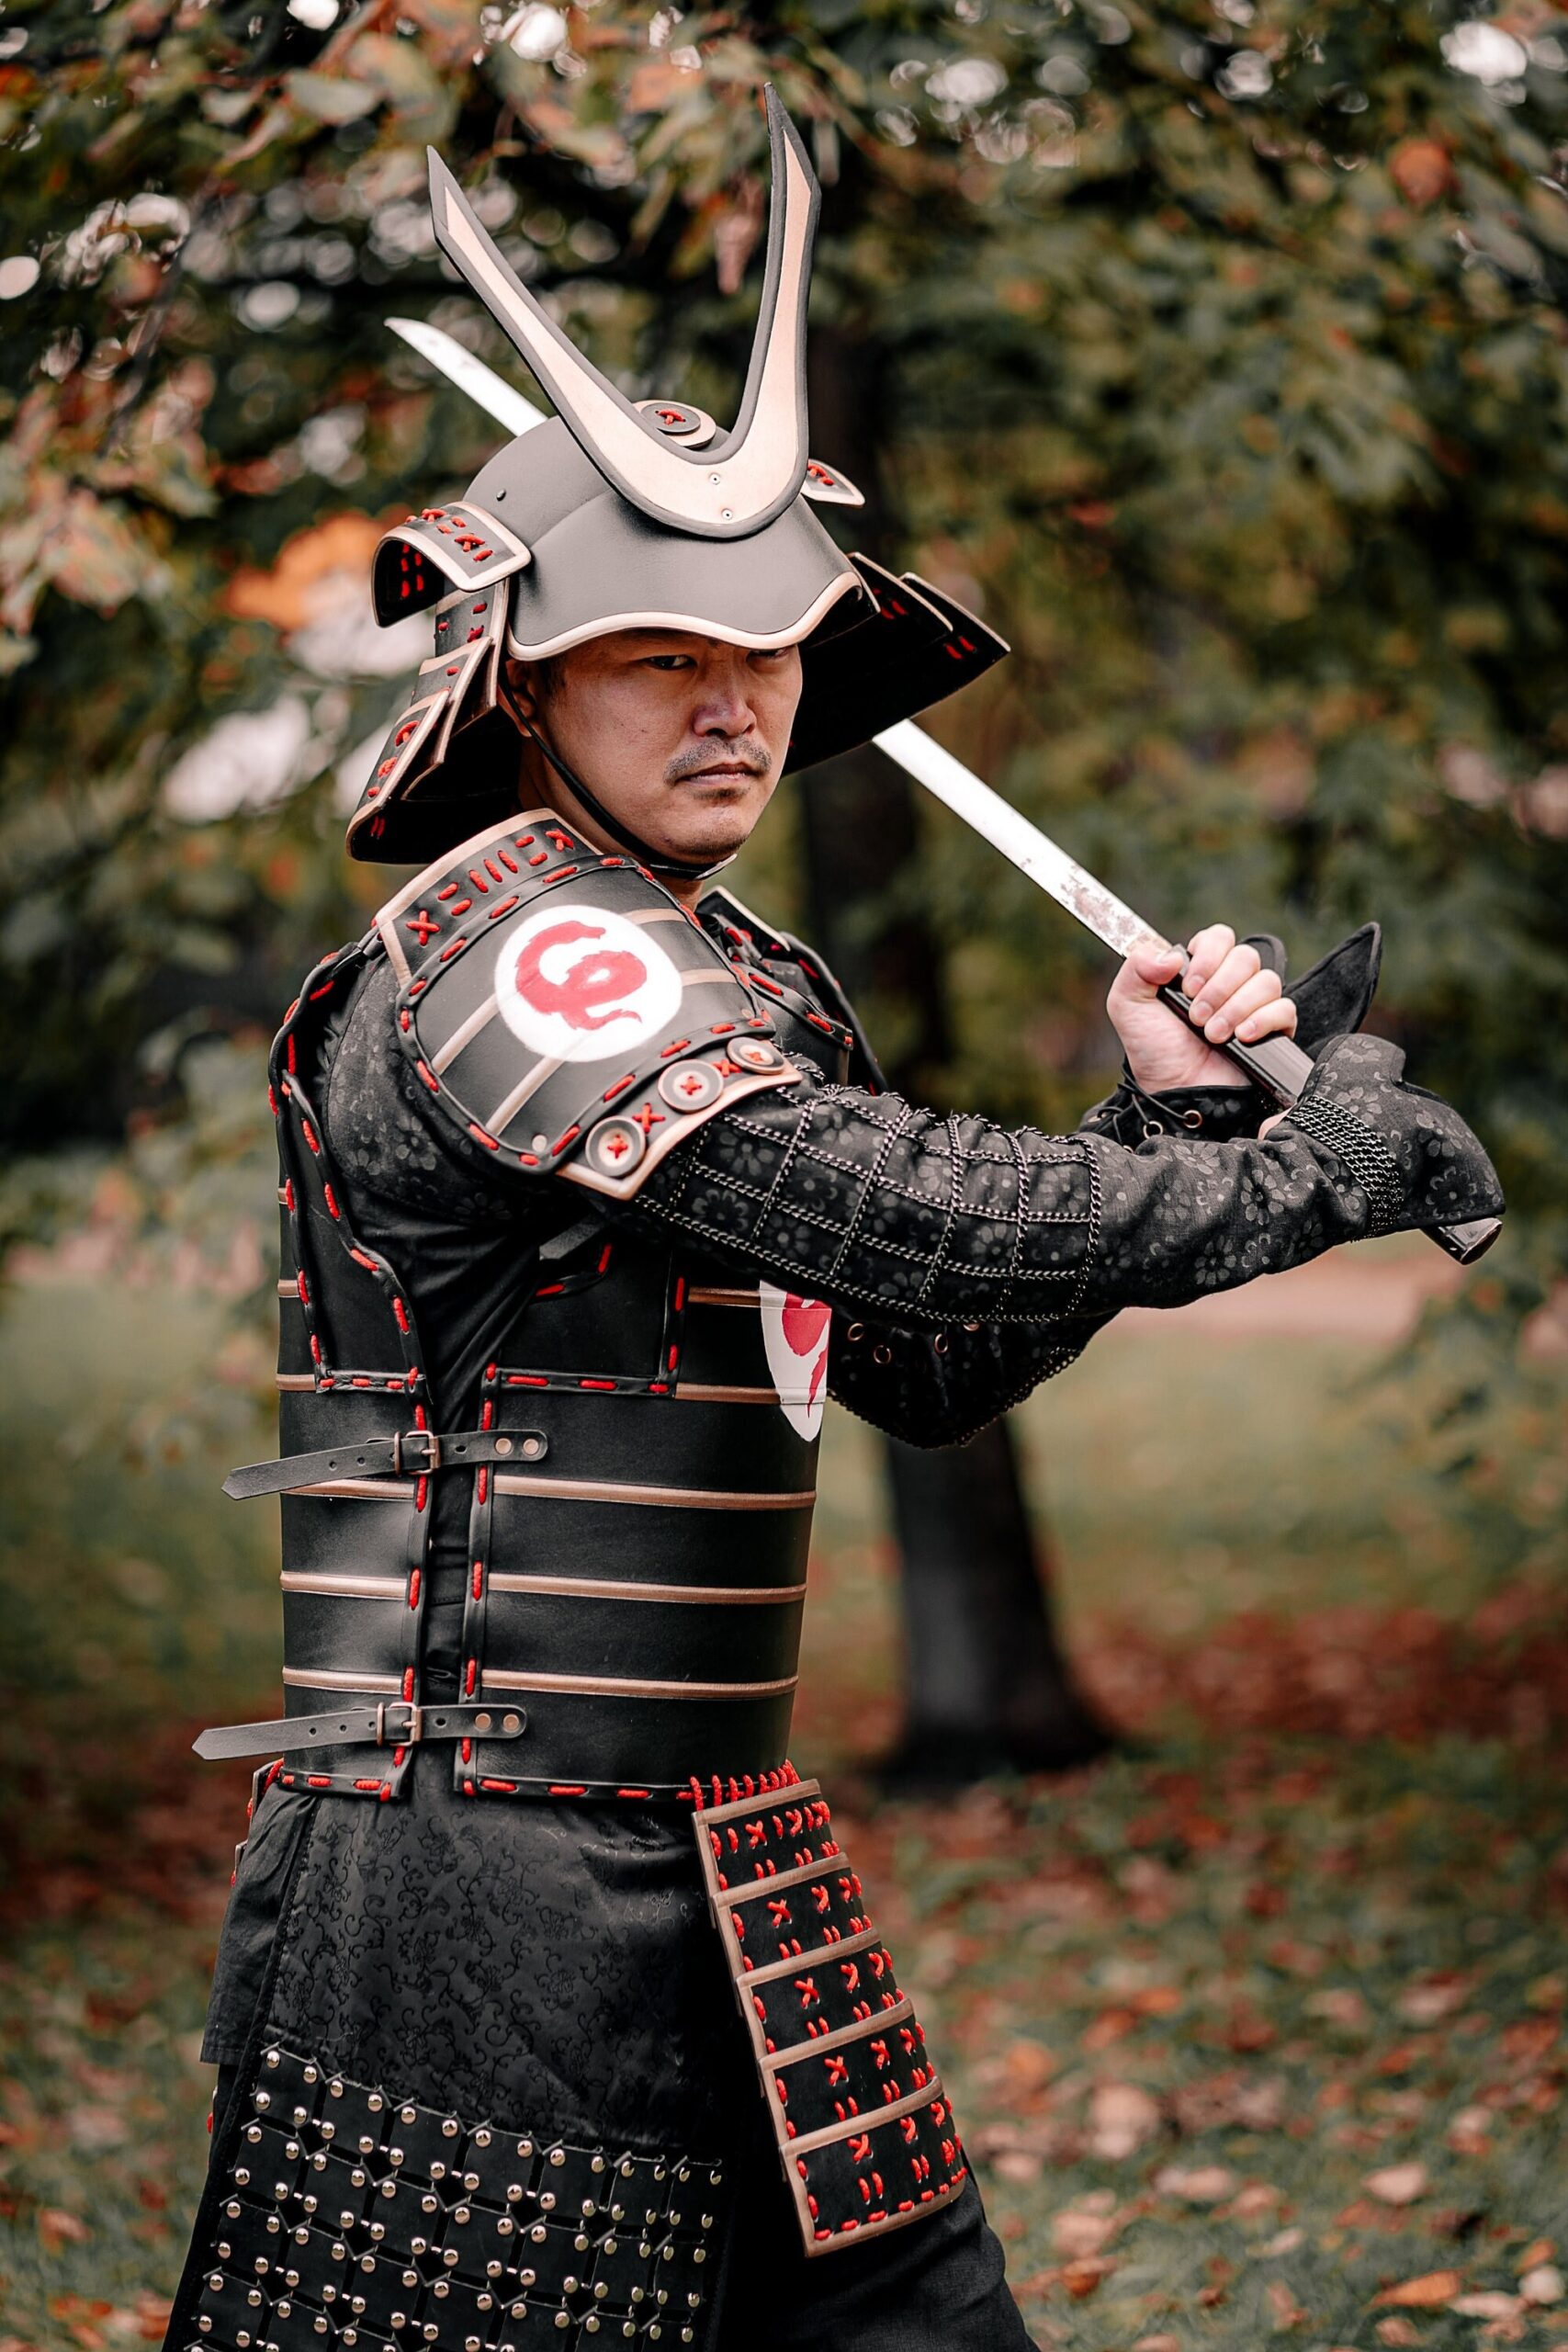 Firefighter Queen exposure Samurai metal warrior armor – SokolWorkshop